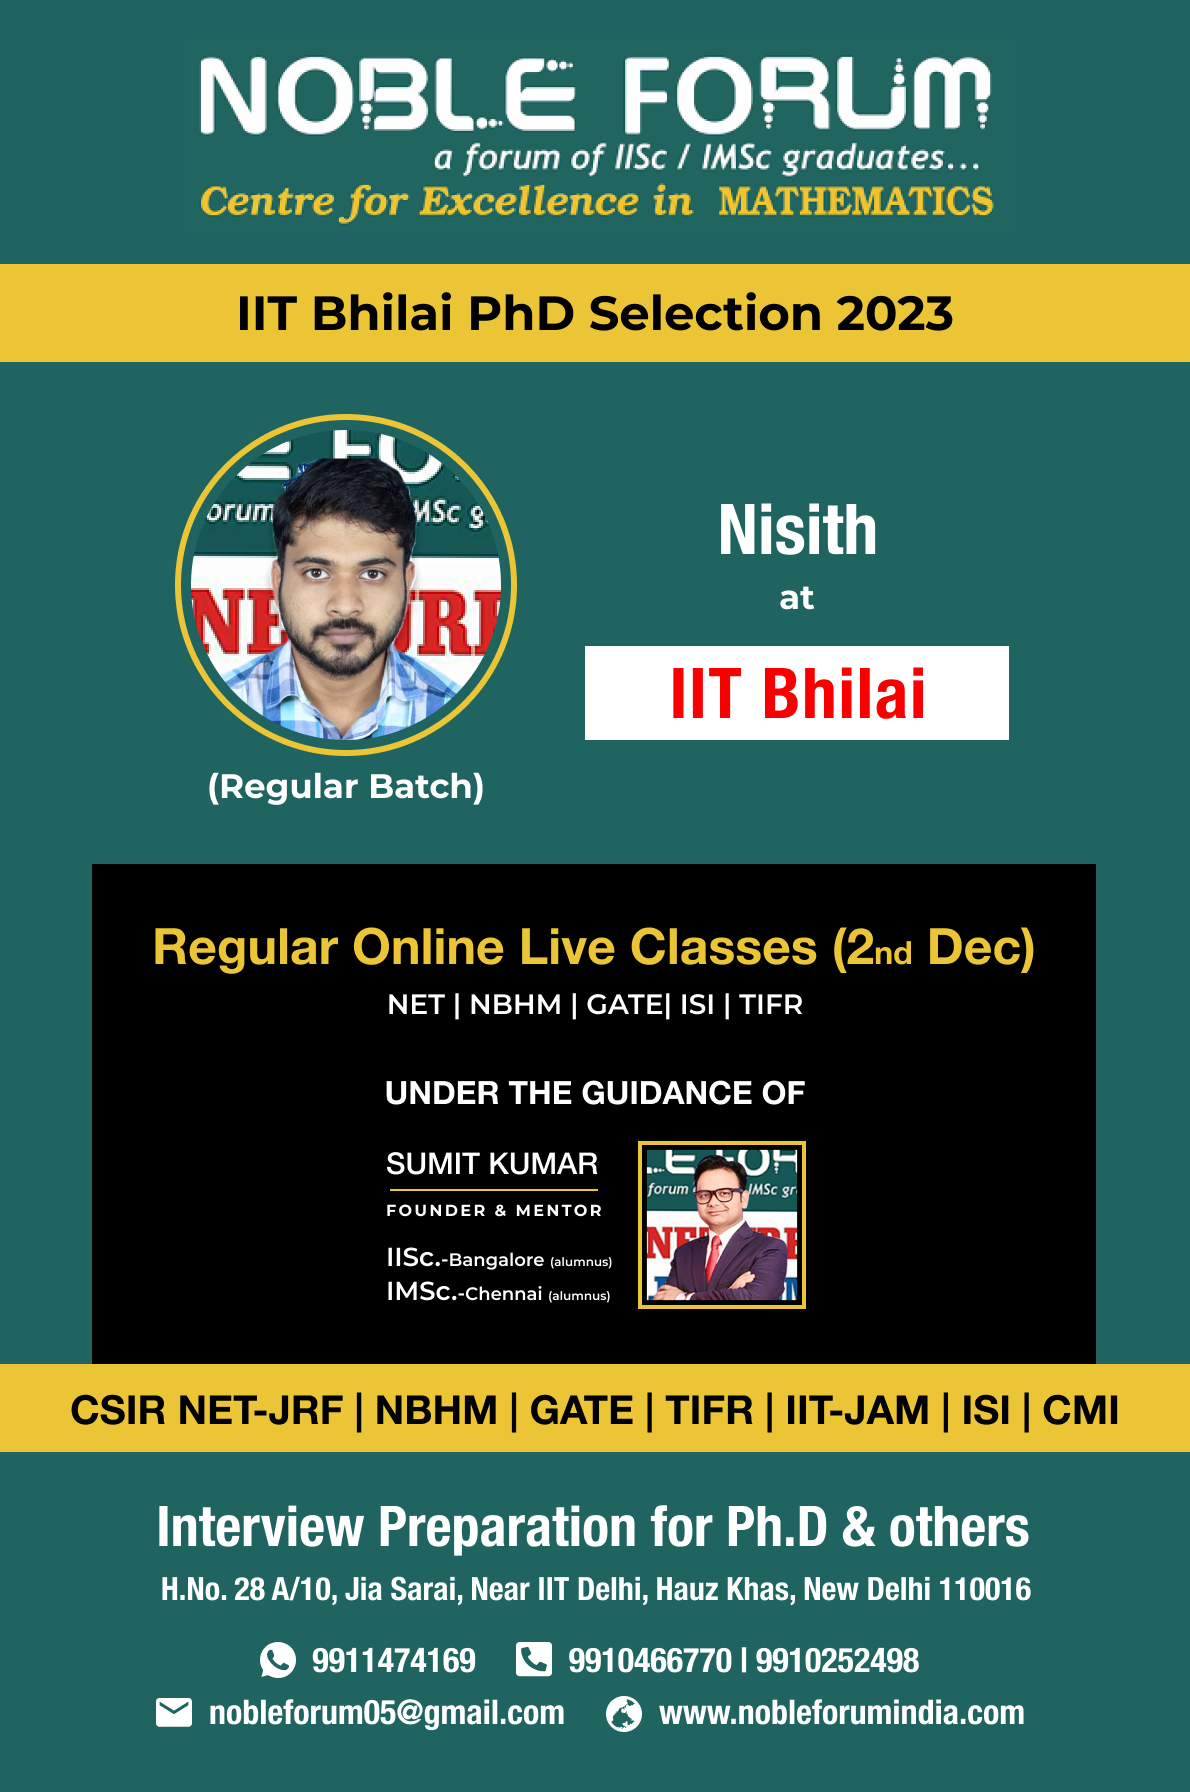 Nisith-IIT Bhilai